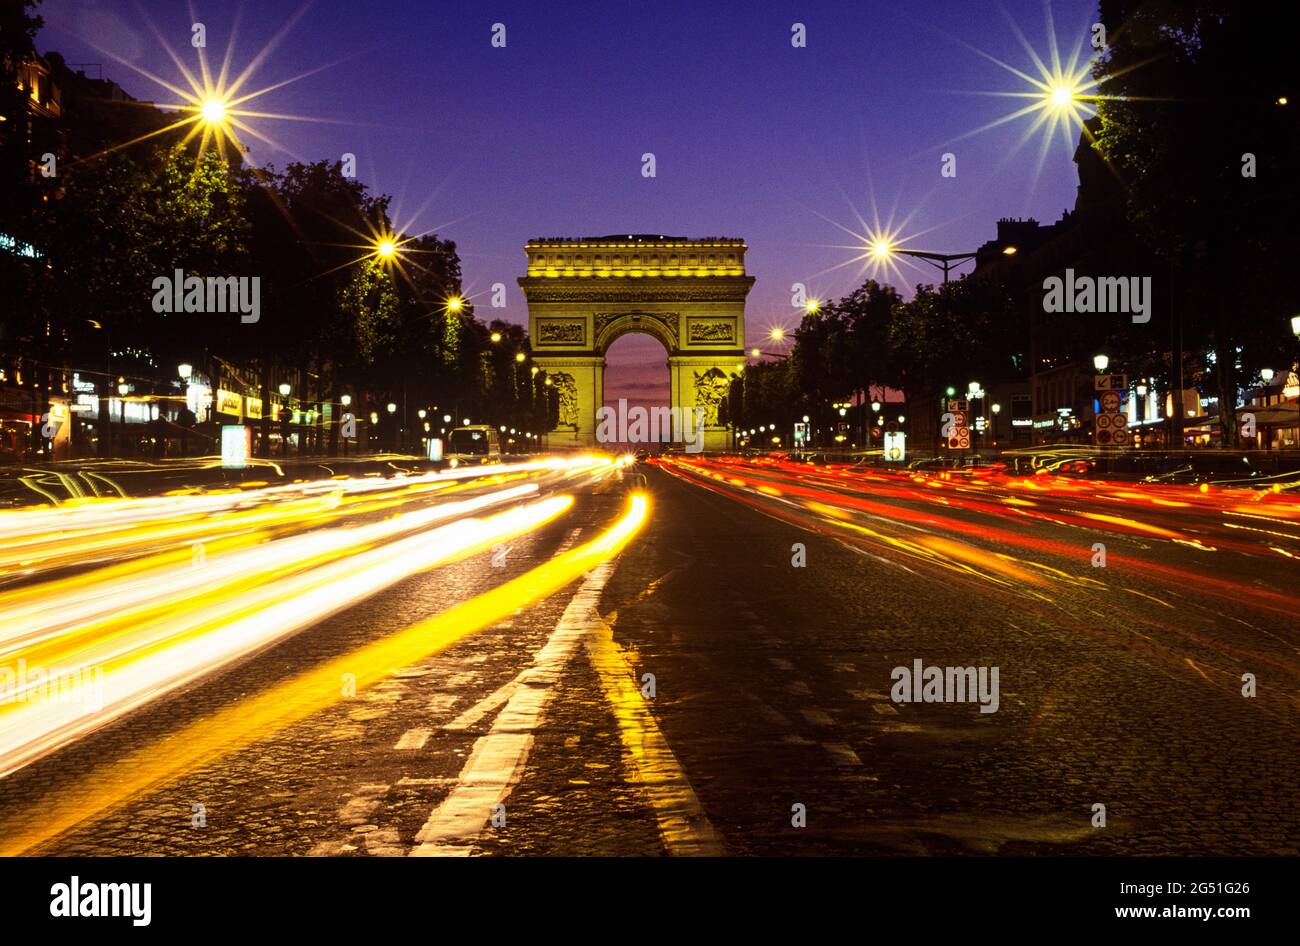 Vue sur les sentiers lumineux des champs Elysées et de l'arche triomphale, Paris, France Banque D'Images